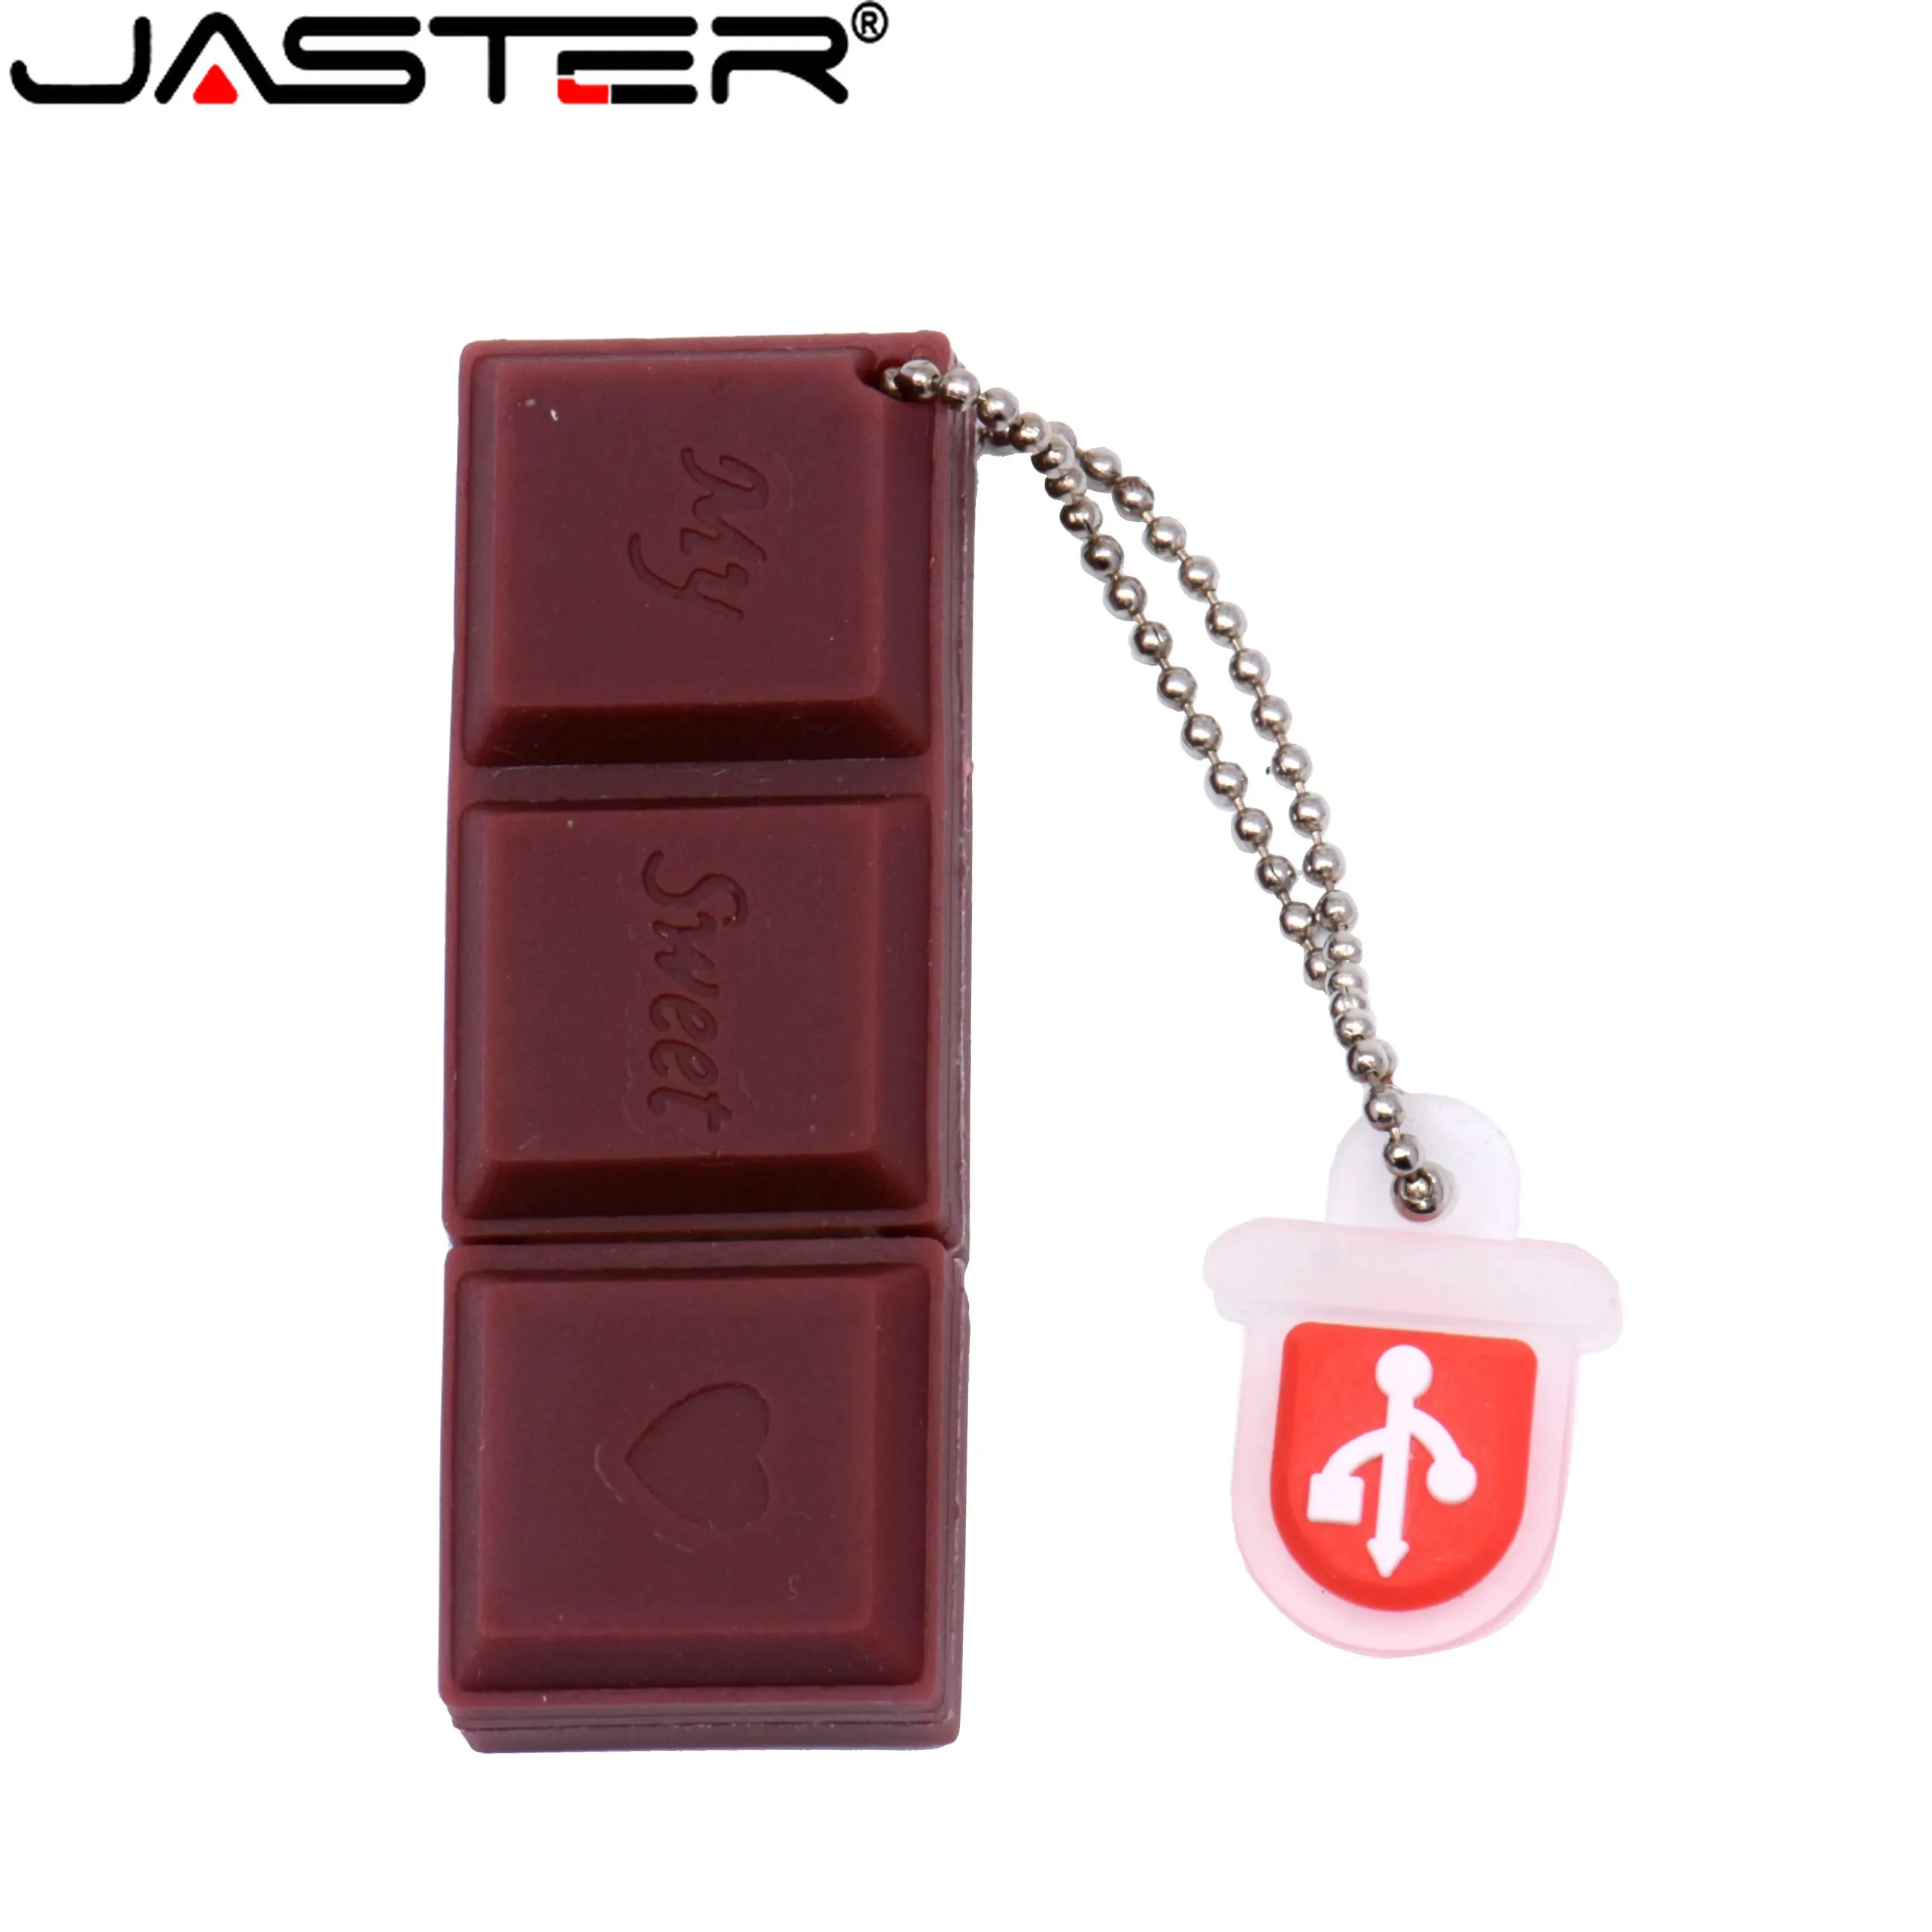 JASTER Fruit USB 플래시 드라이브 64GB 야채 펜 드라이브 32GB 초콜릿 아이스크림 메모리 스틱, 당근 칠리 펜 드라이브 가지 사탕